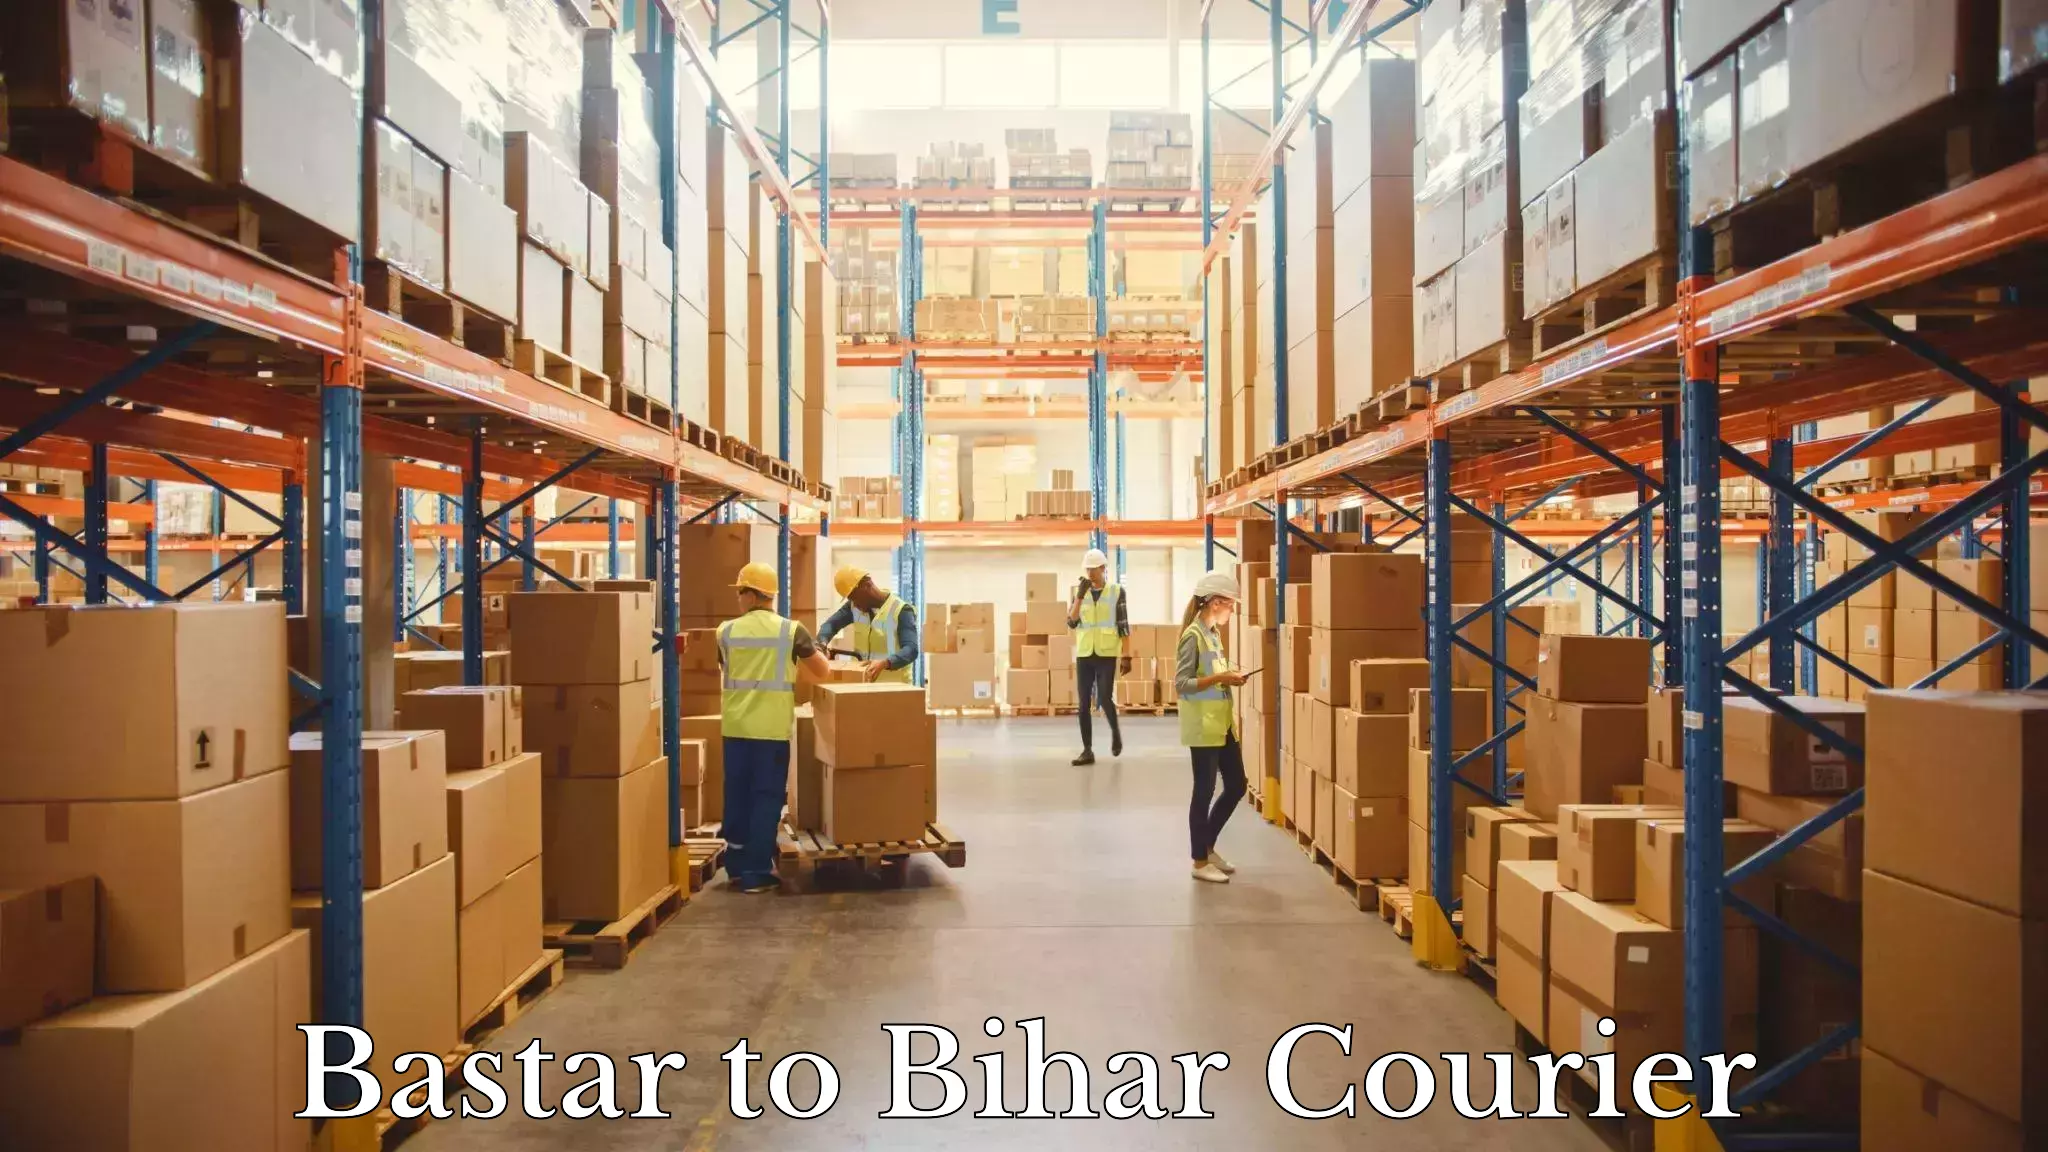 Advanced shipping network Bastar to Bihar